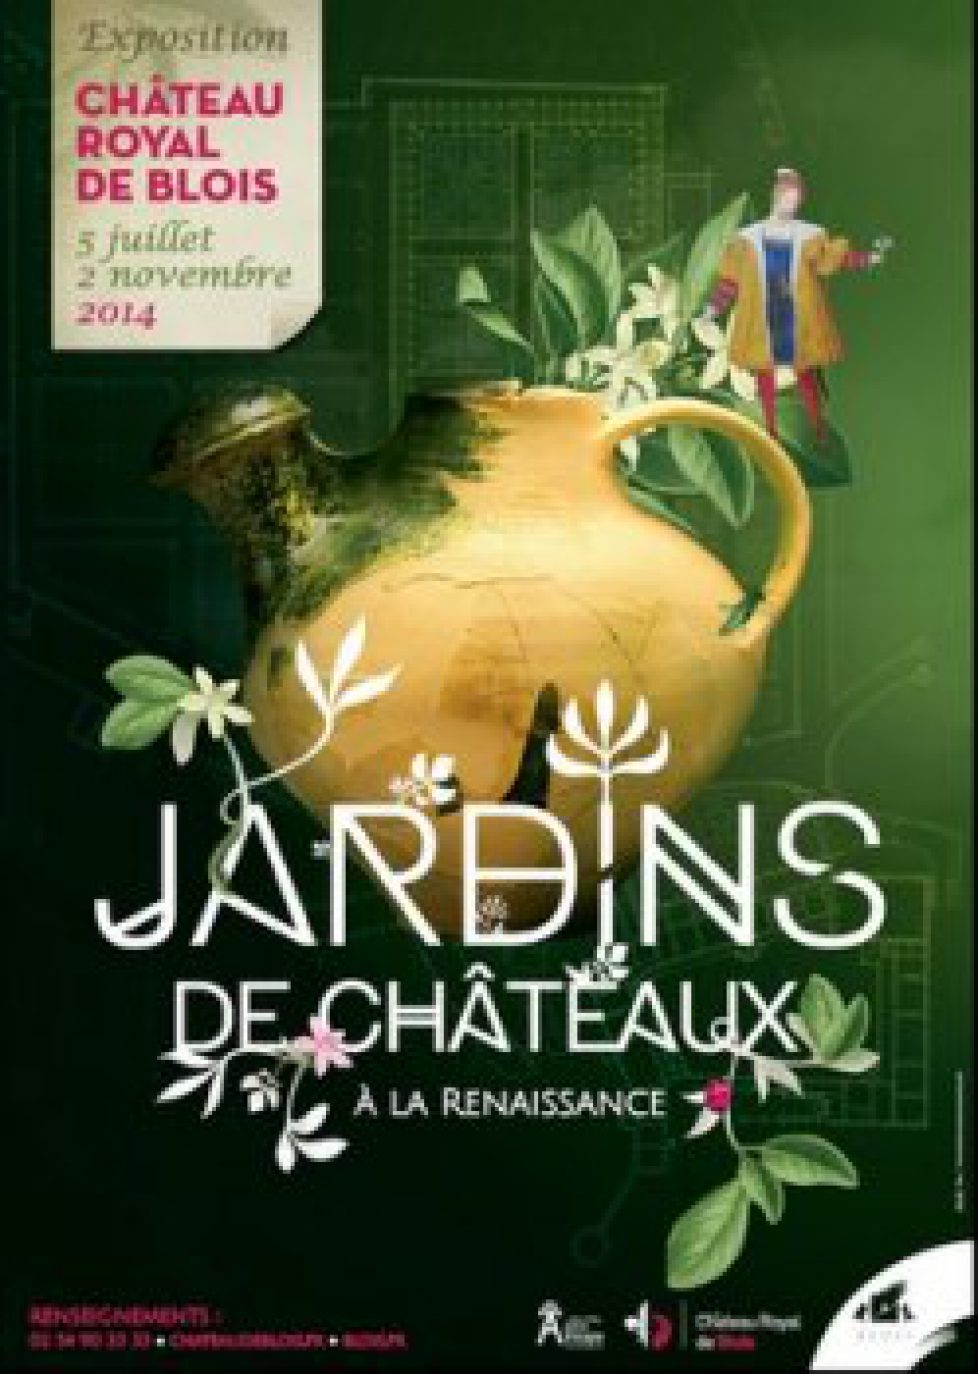 Affiche_Jardins_de_chateaux_a_la_Renaissance_03-8a70a